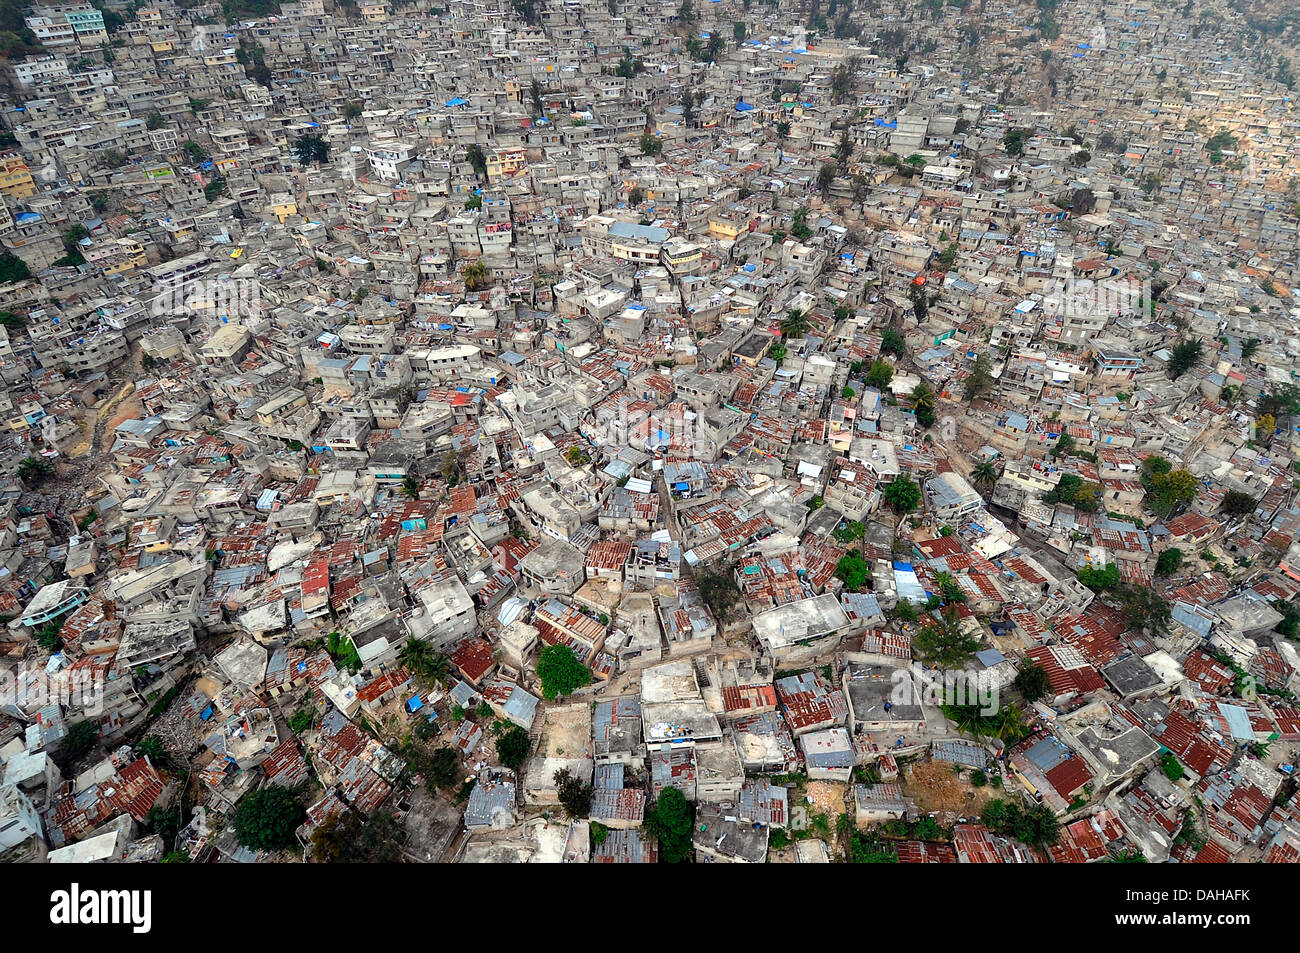 Vista aerea di edifici danneggiati a seguito di un terremoto di magnitudine 7.0 che ha ucciso 220.000 persone Marzo 16, 2010 a Port-au-Prince, Haiti. Foto Stock